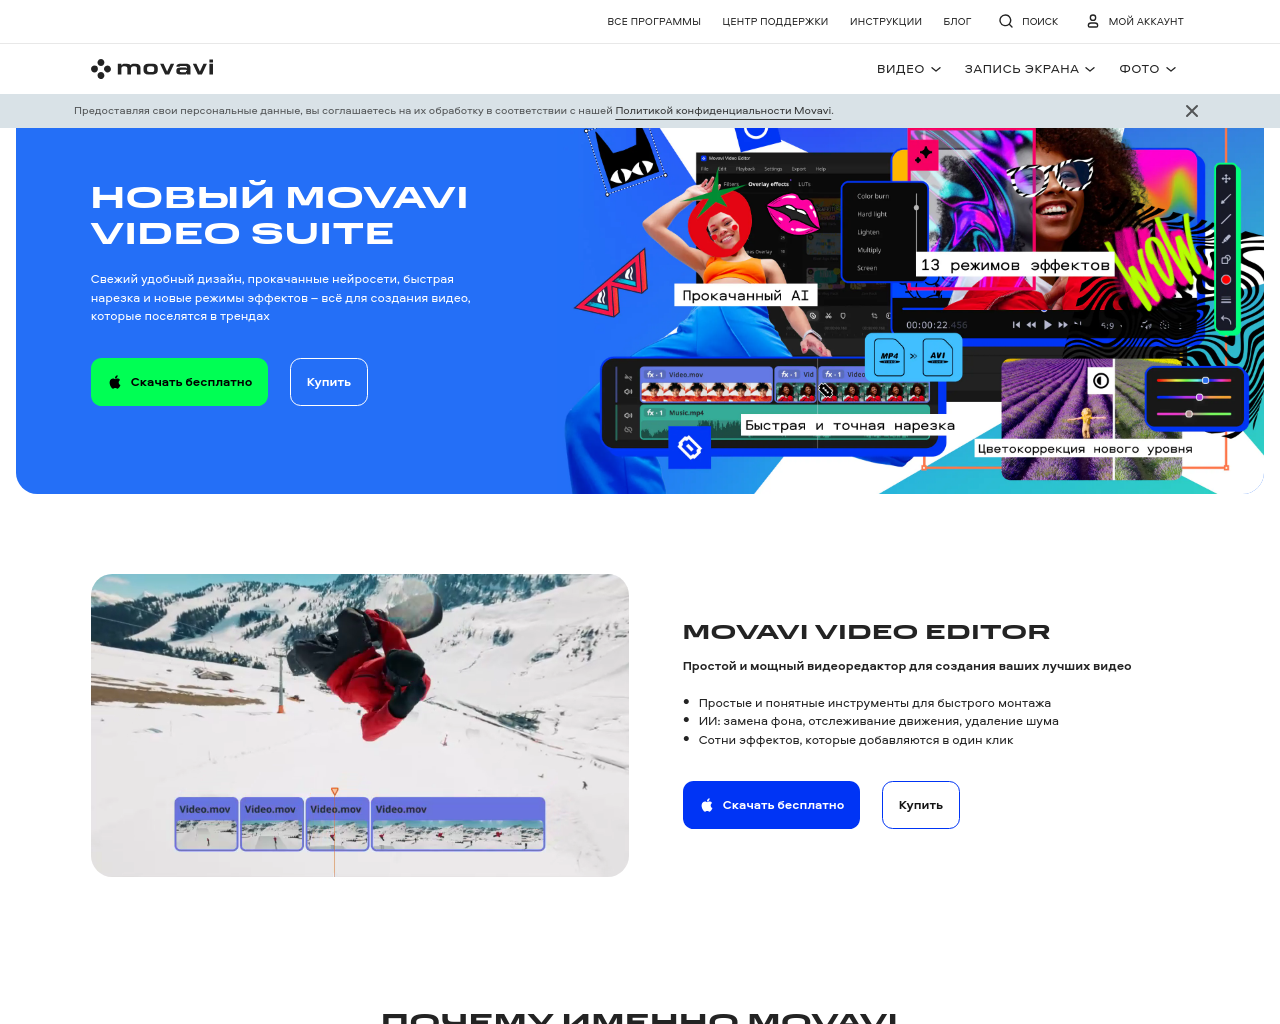 movavi.ru